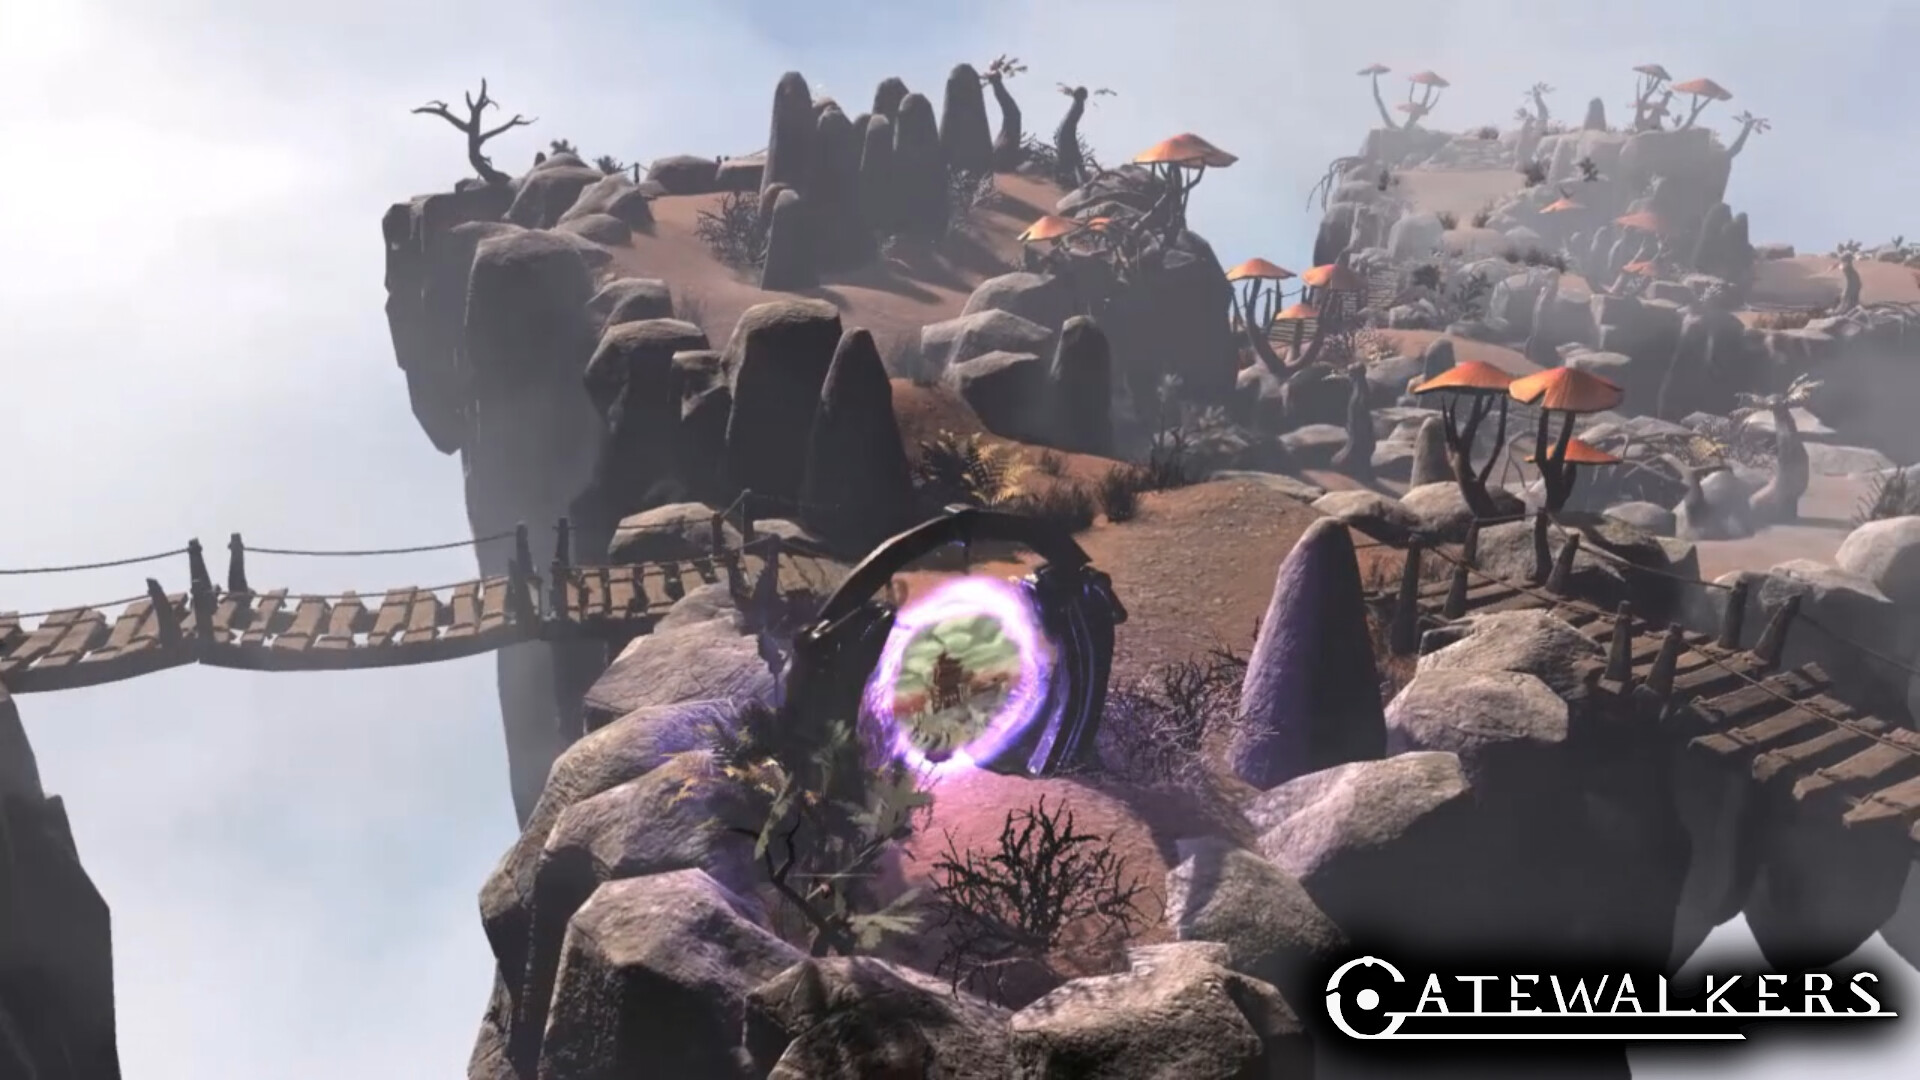 Gatewalkers (Alpha) screenshot